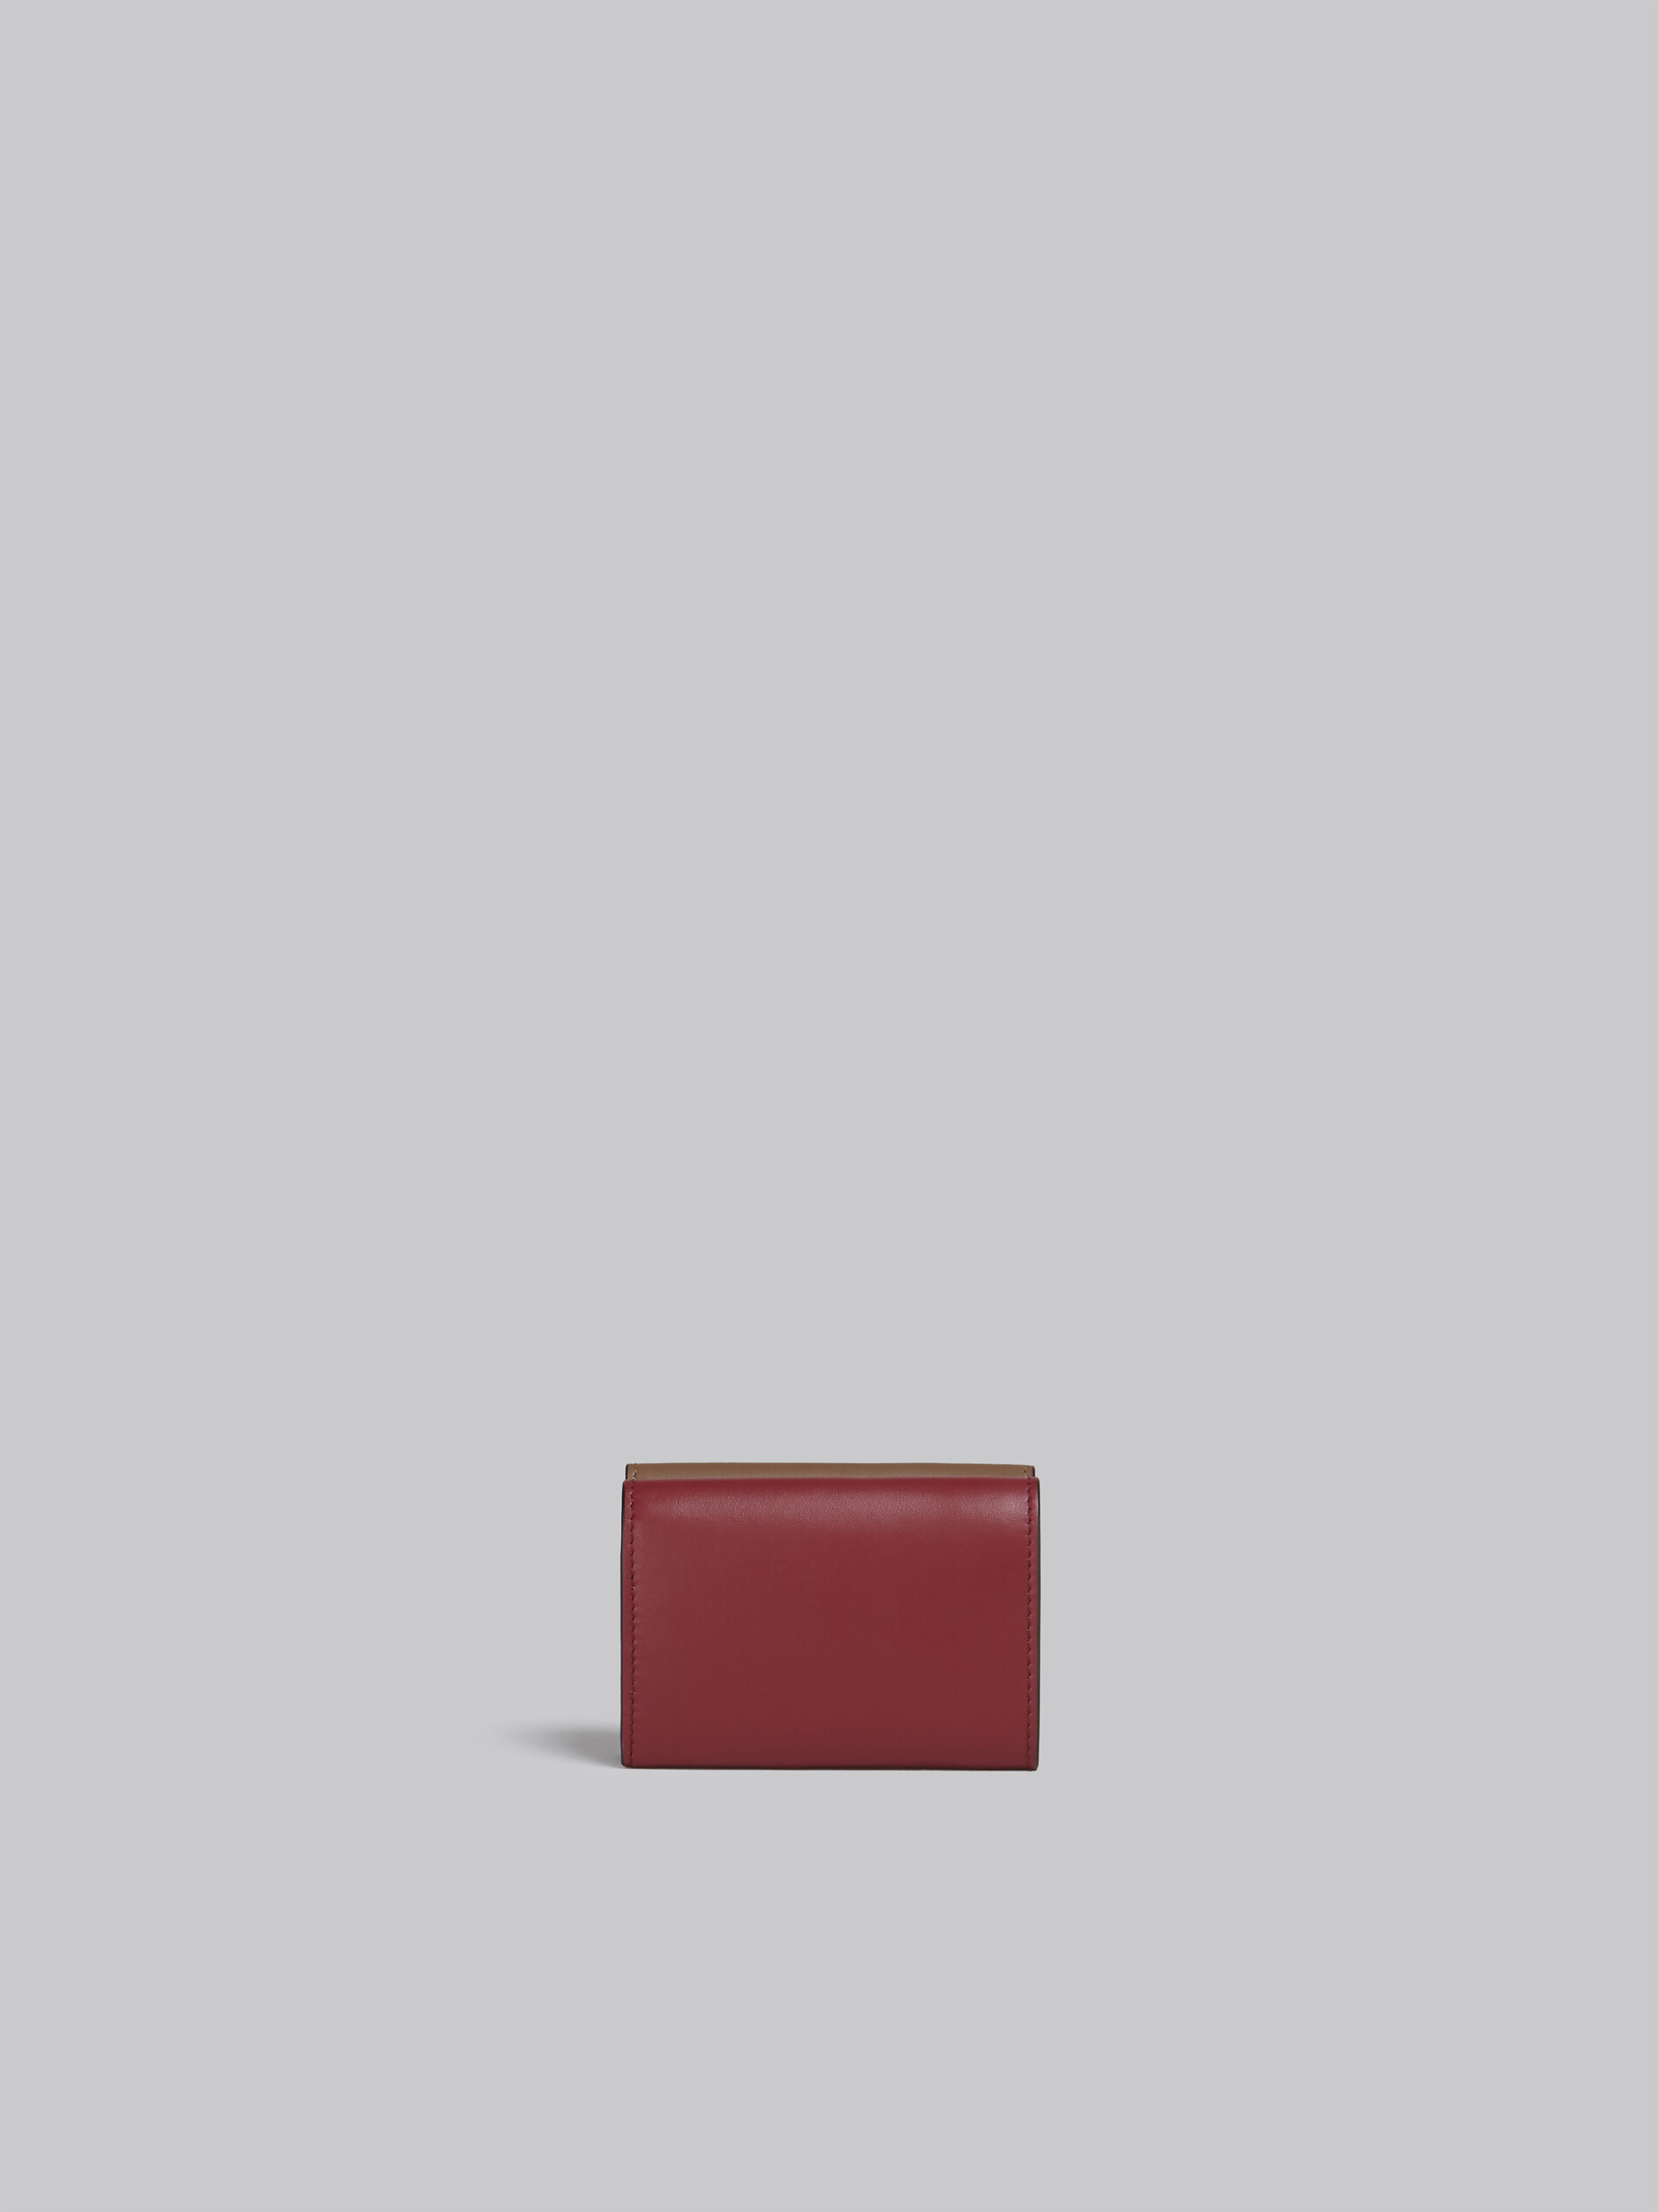 Portafoglio tri-fold in pelle marrone rosa e bordeaux - Portafogli - Image 3